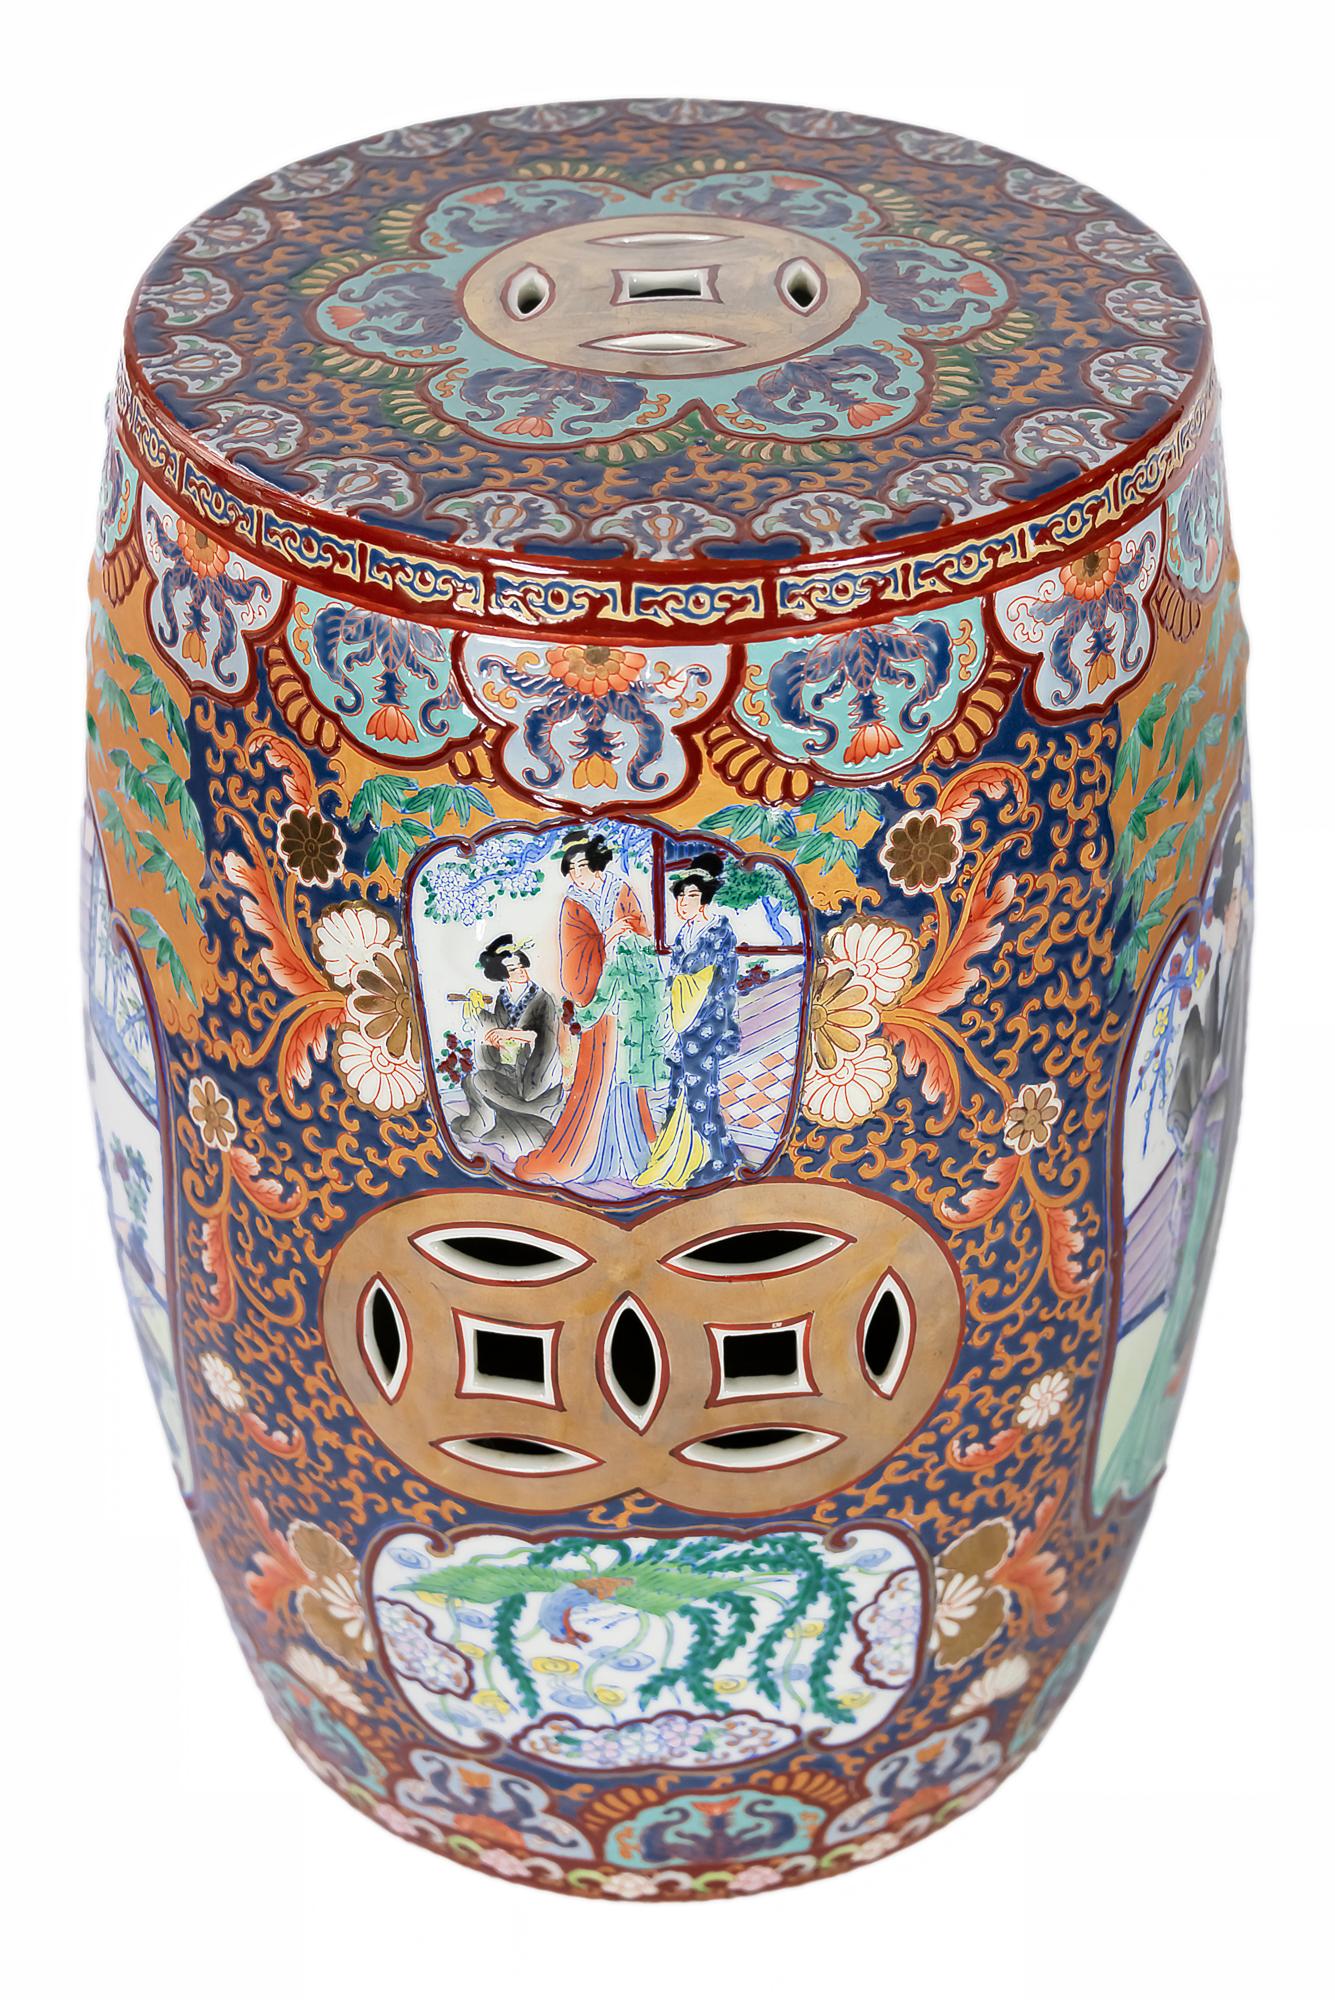 Tabouret de jardin en céramique chinoise avec détails ajourés et décoration circonférentielle des éléments floraux et des scènes de dames.

